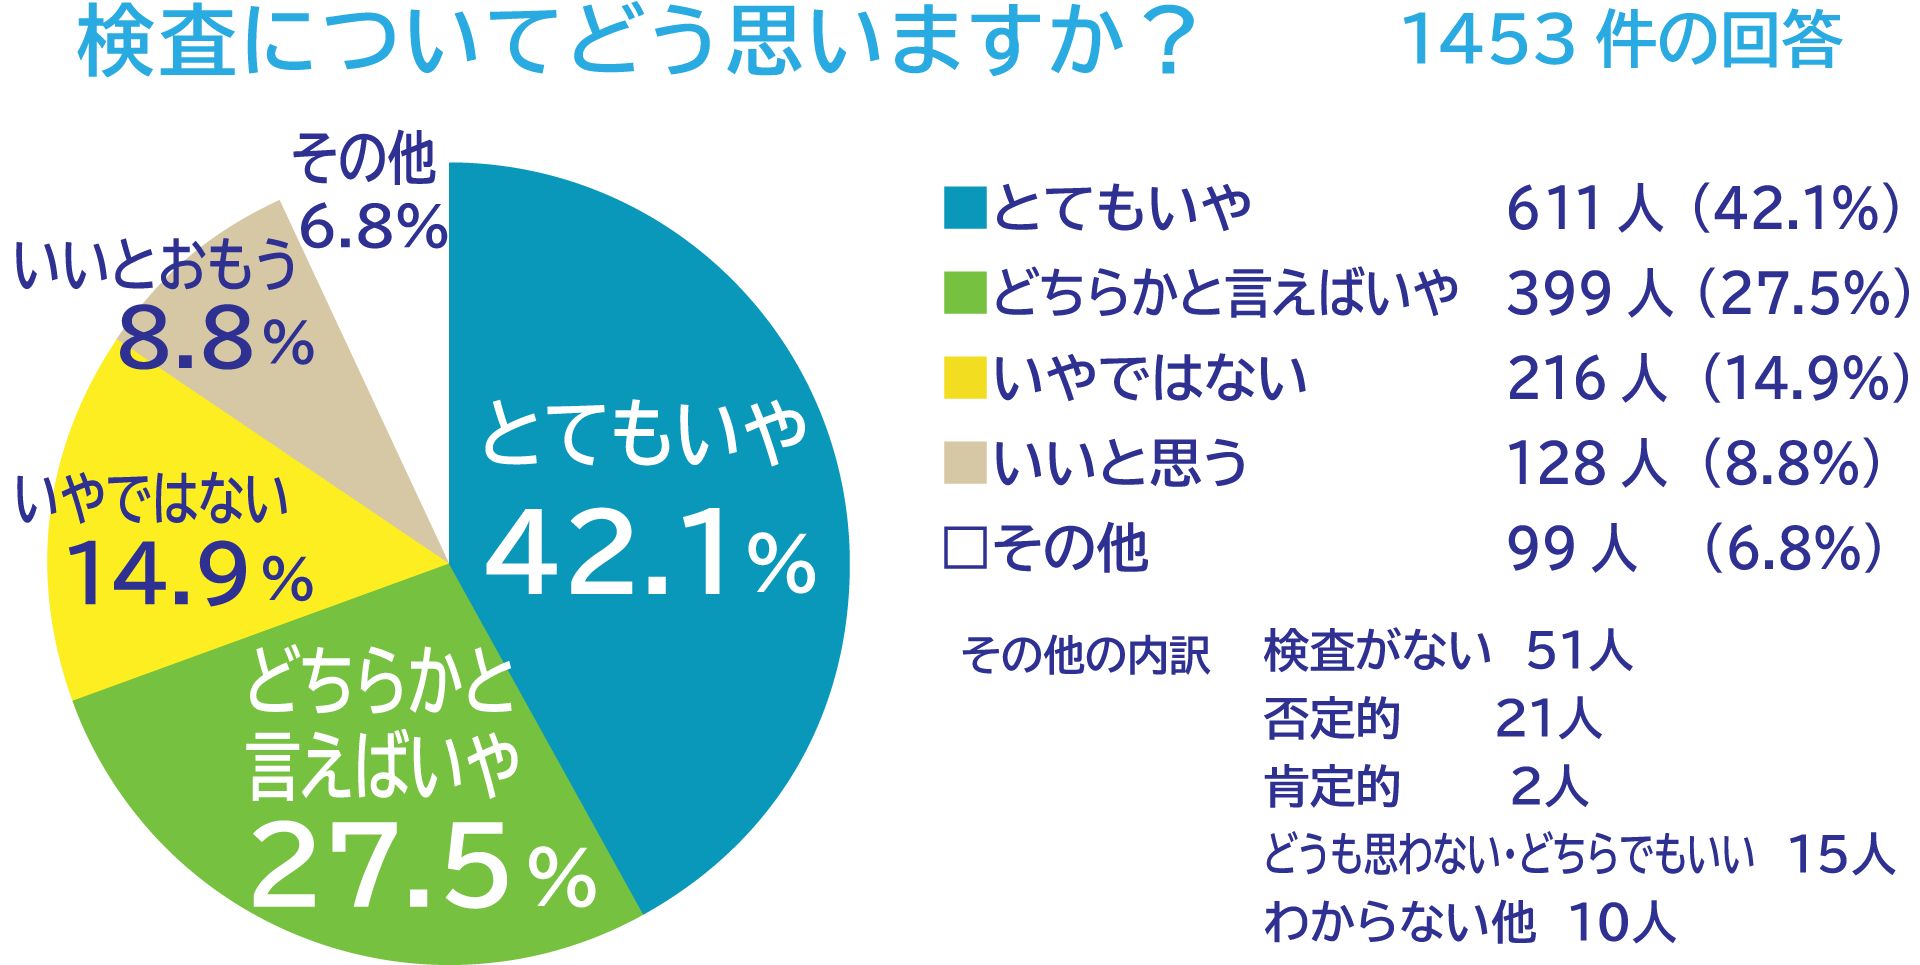 グラフ「その検査についてどう思いますか」1453件の回答。とてもいや　611人(42.1％)、どちらかと言えばいや　399人(27.5％)、いやではない　216人(14.9％)、いいと思う　128人(8.8％) 、その他　99人(6.8％) 